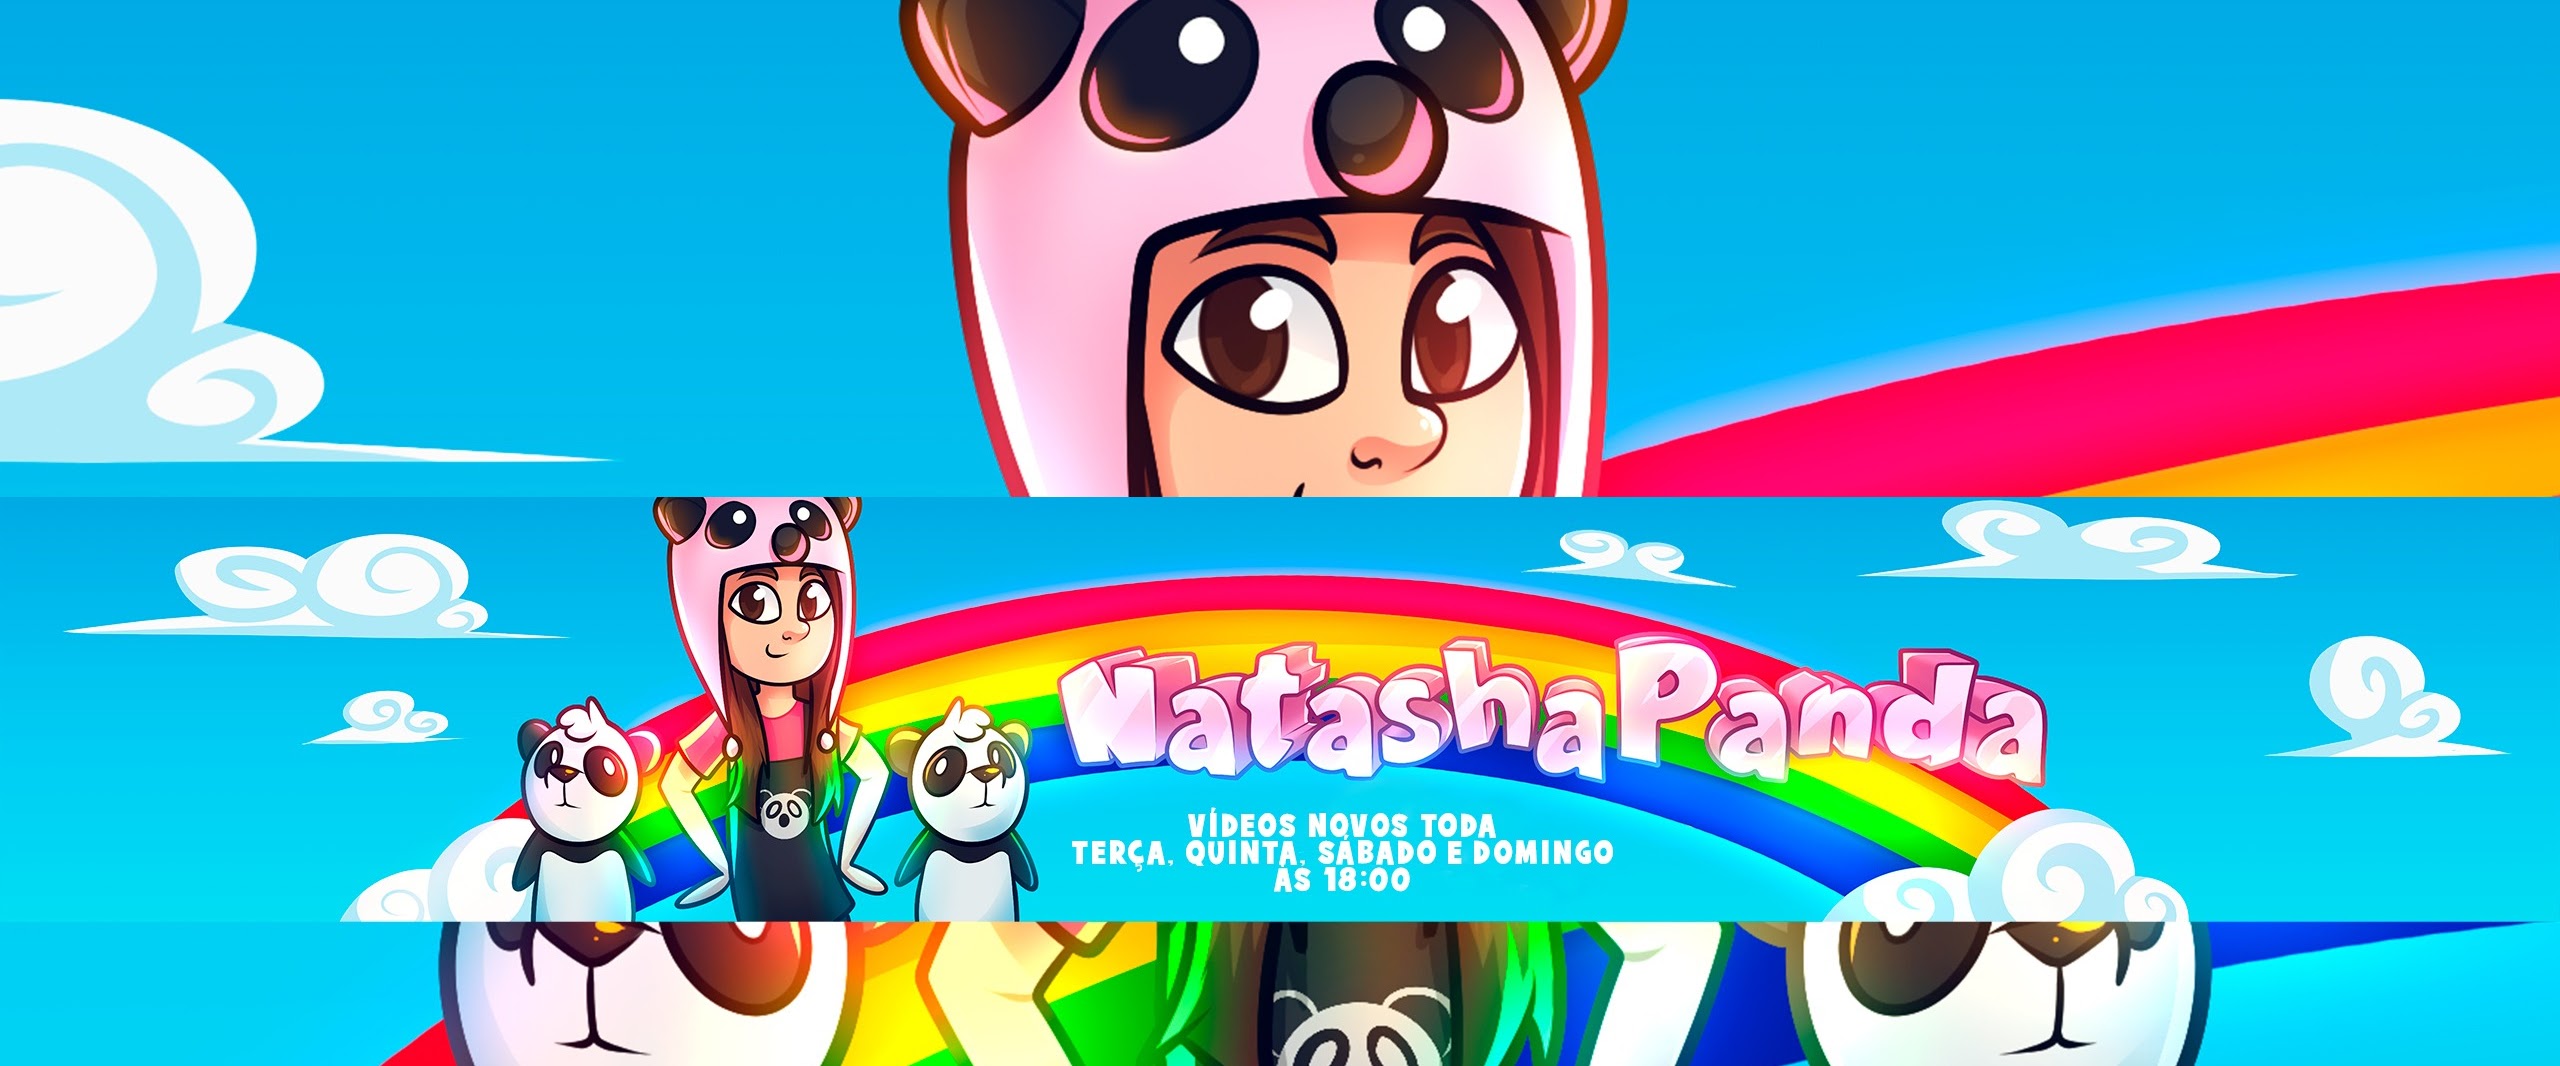 Natasha Panda – TODAS AS MÚSICAS DA NATASHA PANDA EM UM VÍDEO SÓ